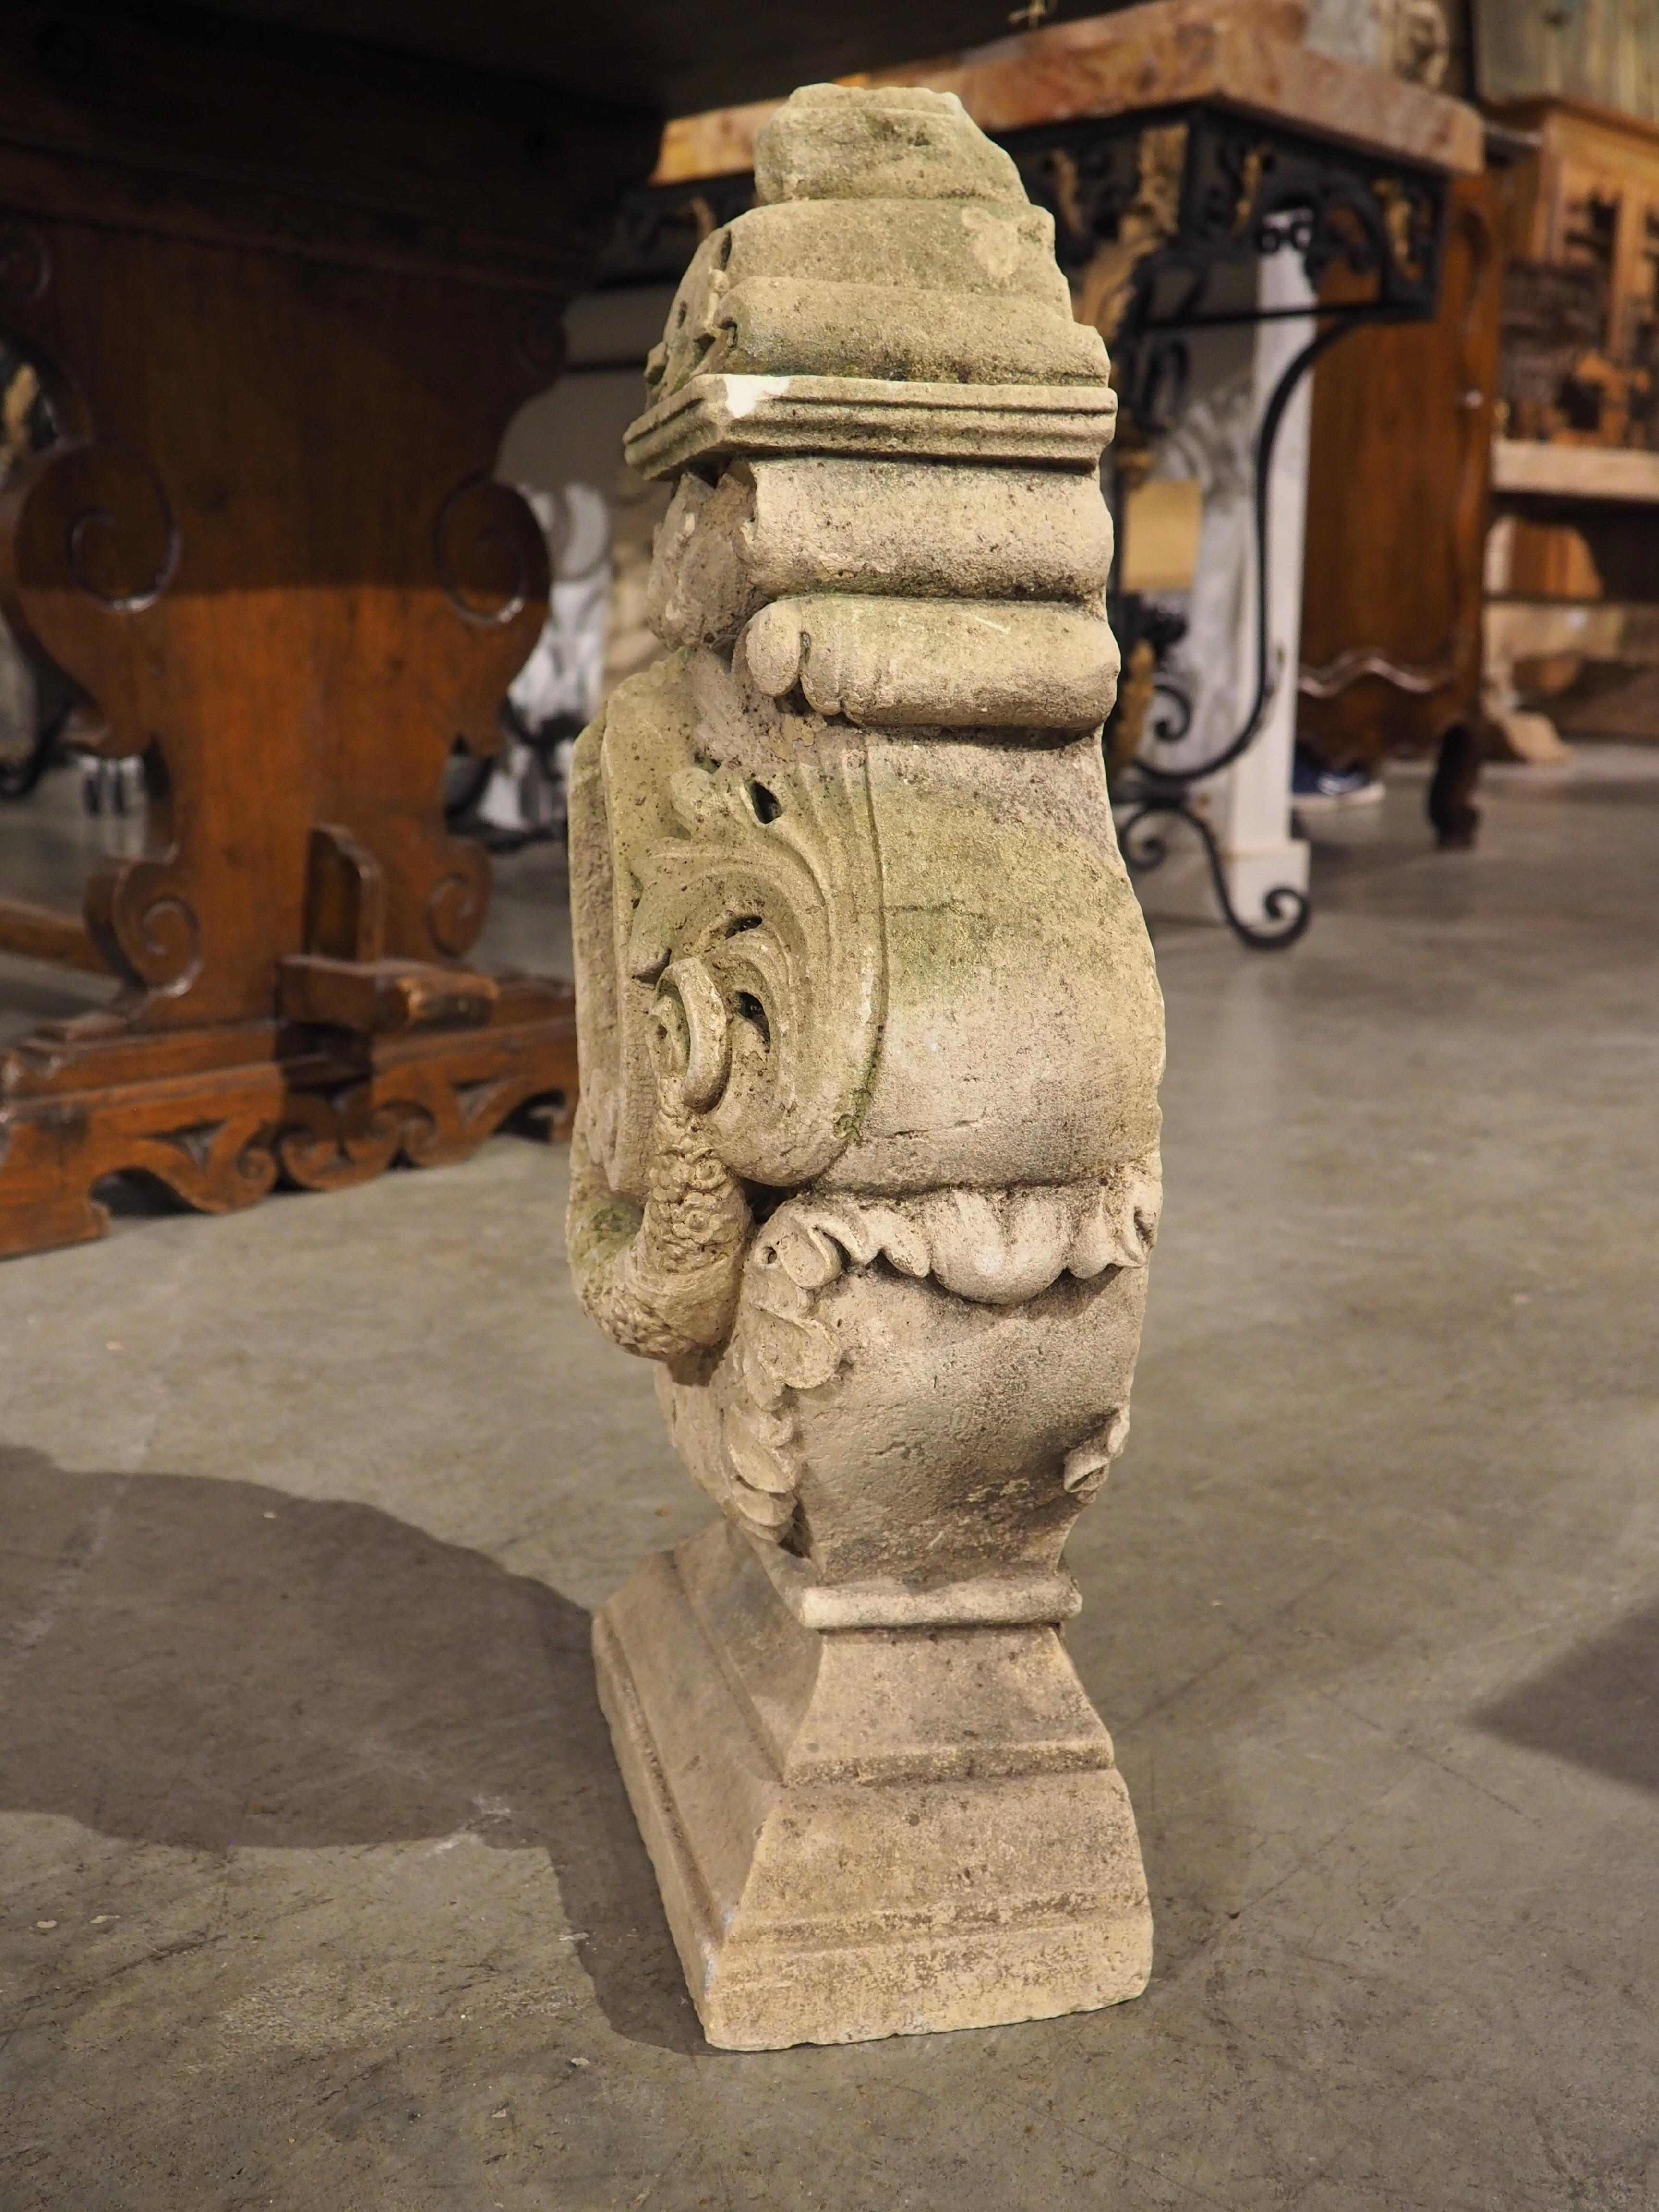 Sculptée à la main en France, vers 1850, cette architecture unique en pierre calcaire rappelle un reliquaire antique. Son design complexe présente une niche centrale flanquée de volutes, au-dessus d'une guirlande florale qui tombe en cascade sur une